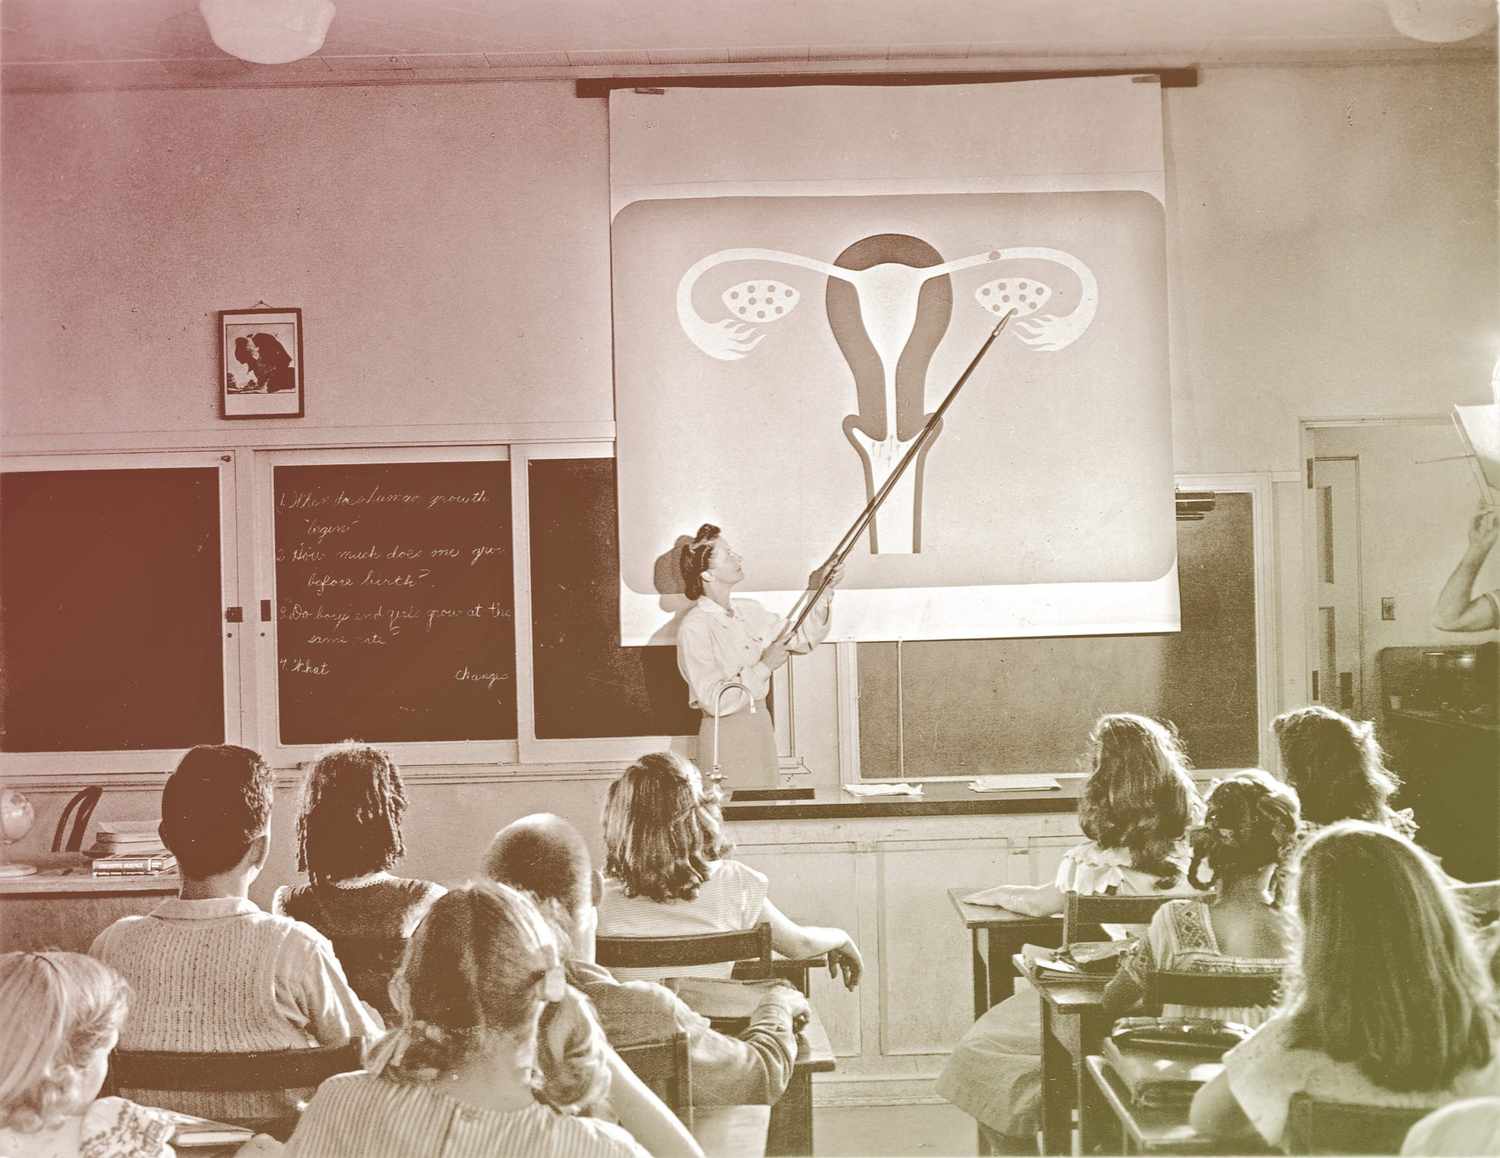 La educación sexual en la escuela y en casa necesita un enfoque antirracista